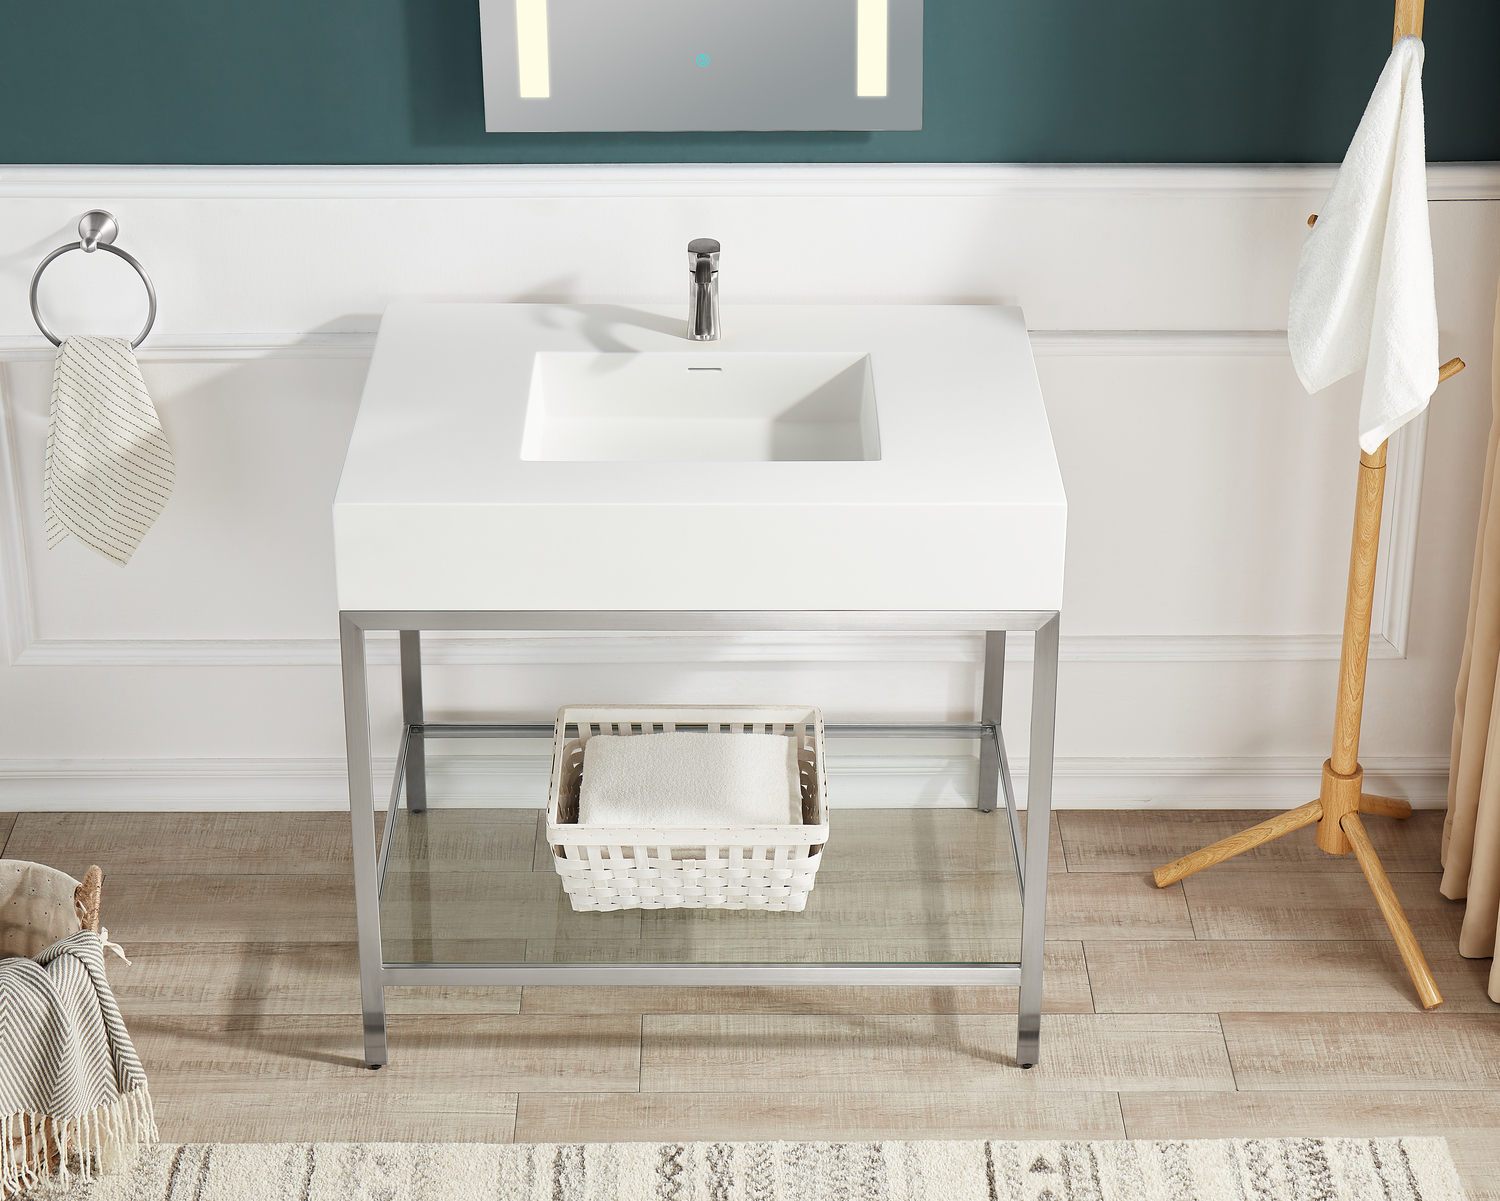 modern oak bathroom vanity Anzzi BATHROOM - Console Sinks - Sink & Frame Brushed Nickel